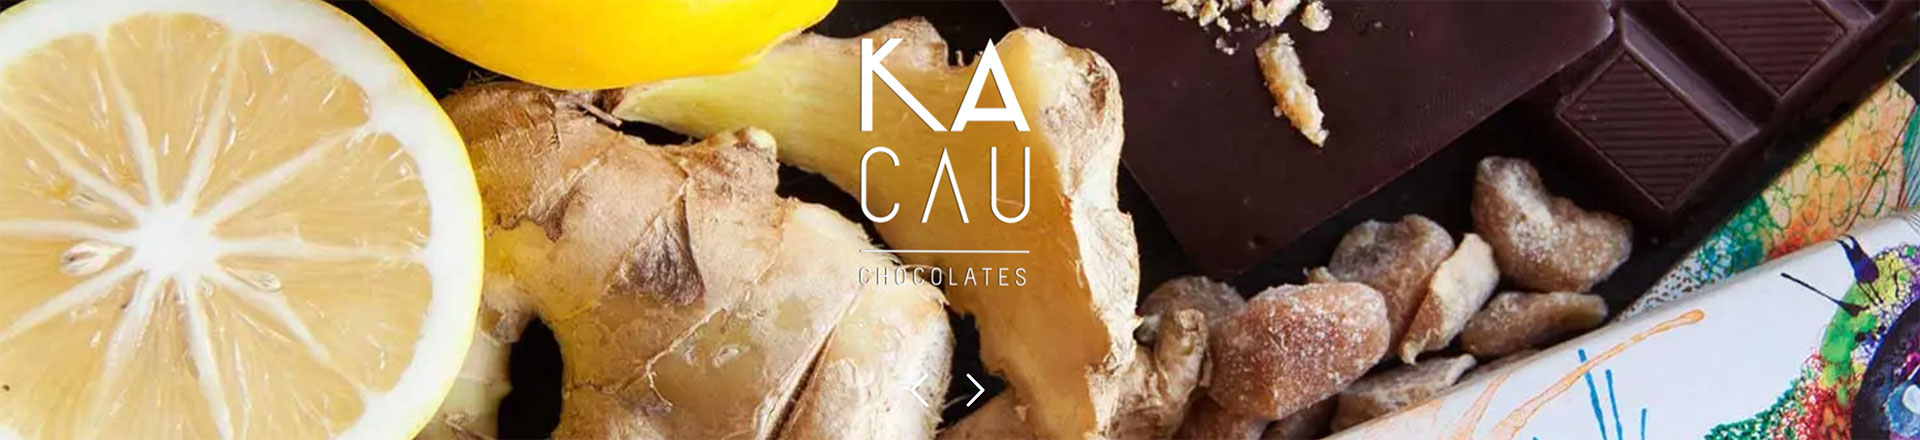 Kacao Ecuador